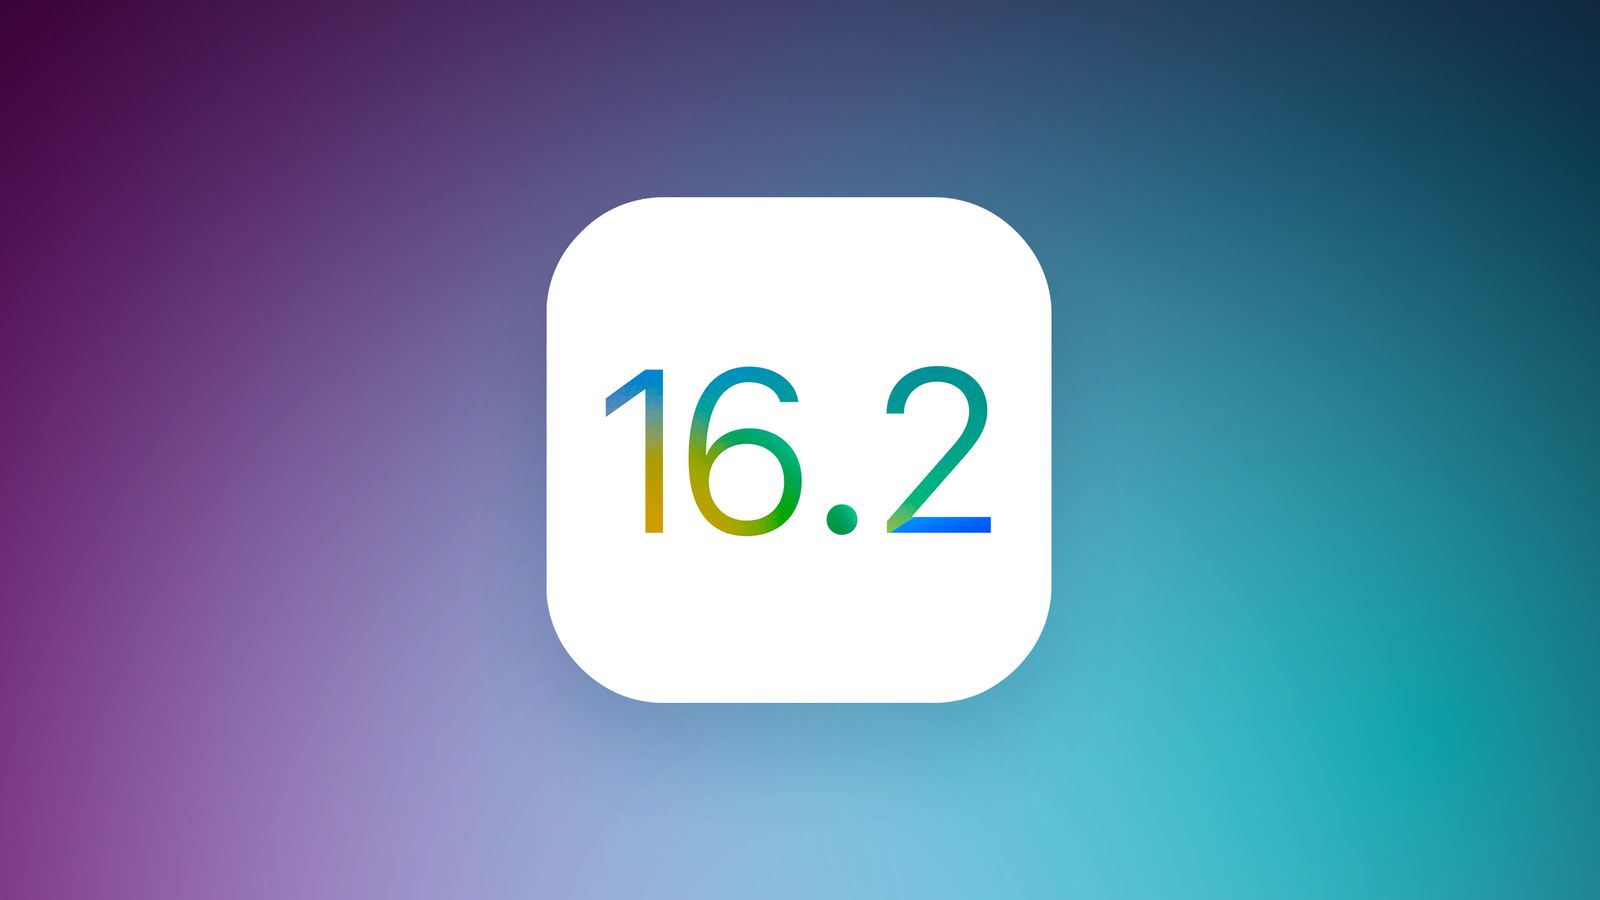 Apple veröffentlicht iOS 16.2 Beta 2: Was ist neu?